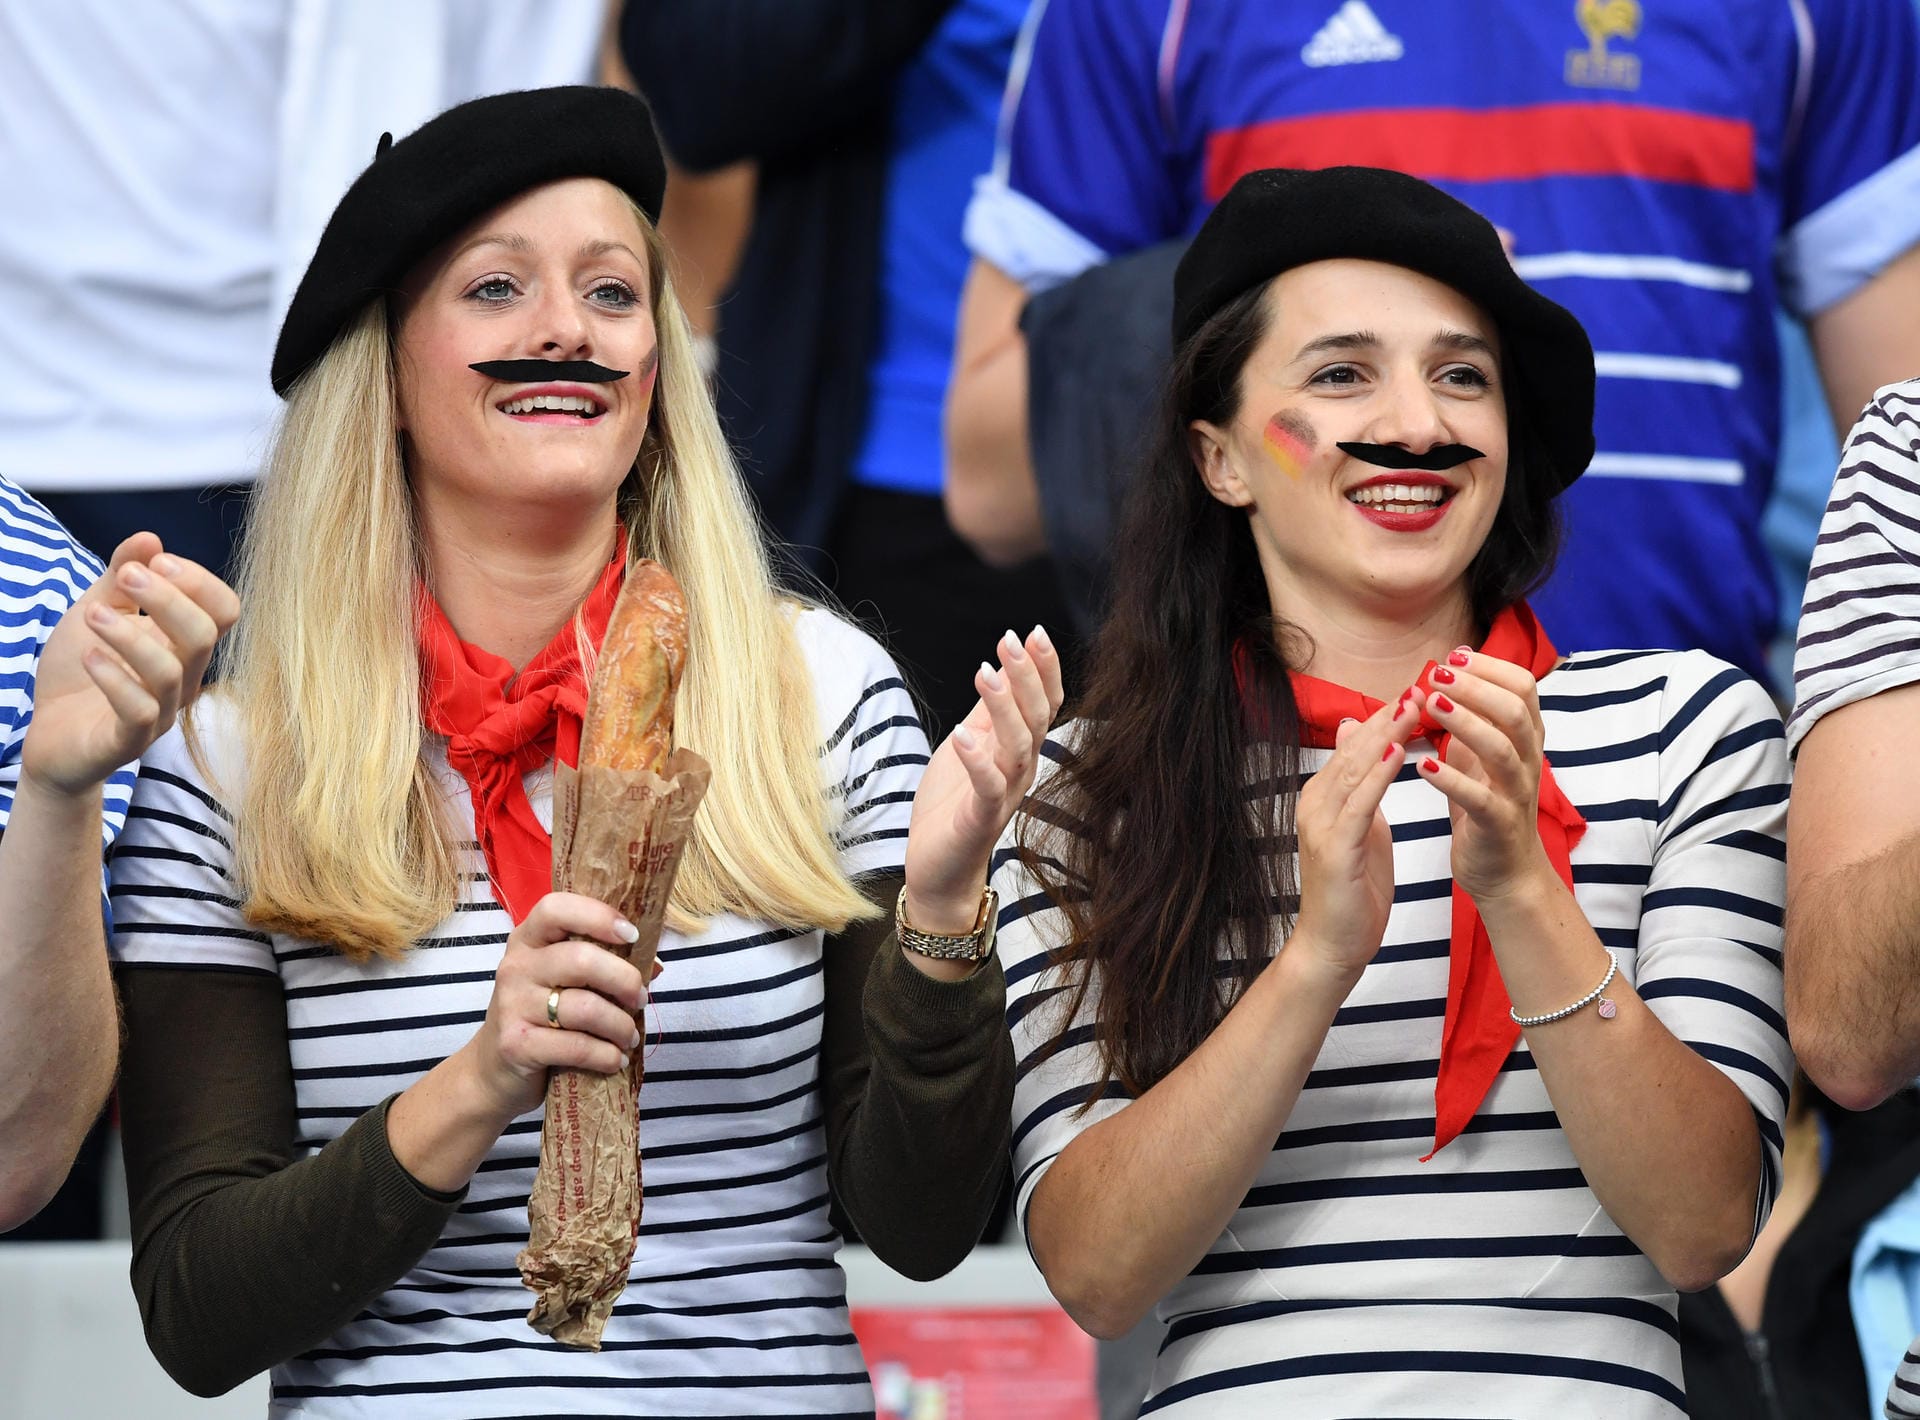 Die Fans der Equipe Tricolore haben sich stereotypisch herausgeputzt: Diese beiden weiblichen Fans bestechen durch französische Markenzeichen wie Mustache und Baskenmütze...